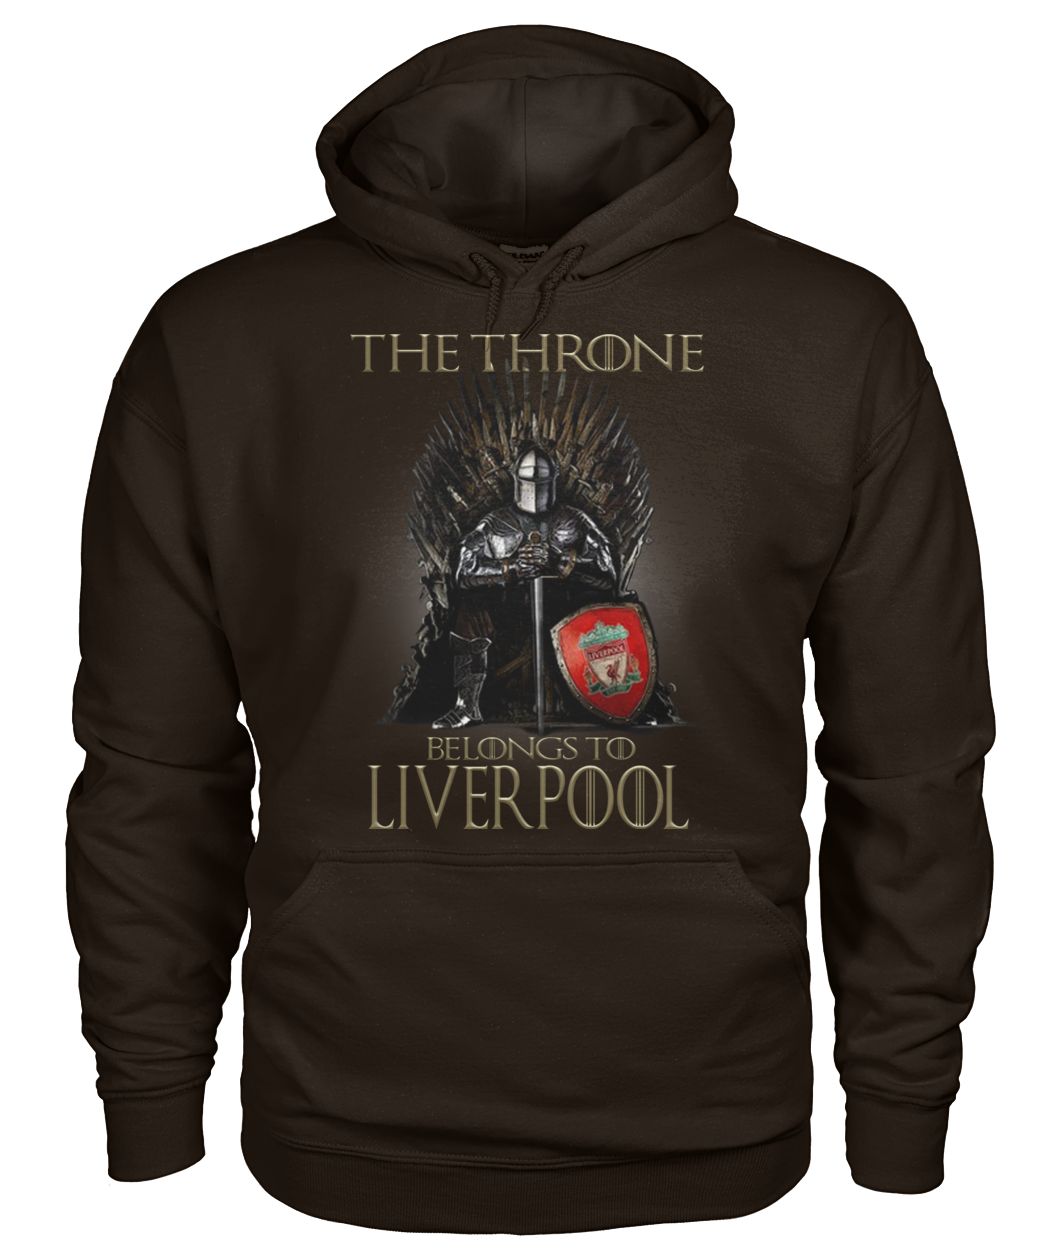 Game of thrones the throne belongs to liverpool gildan hoodie